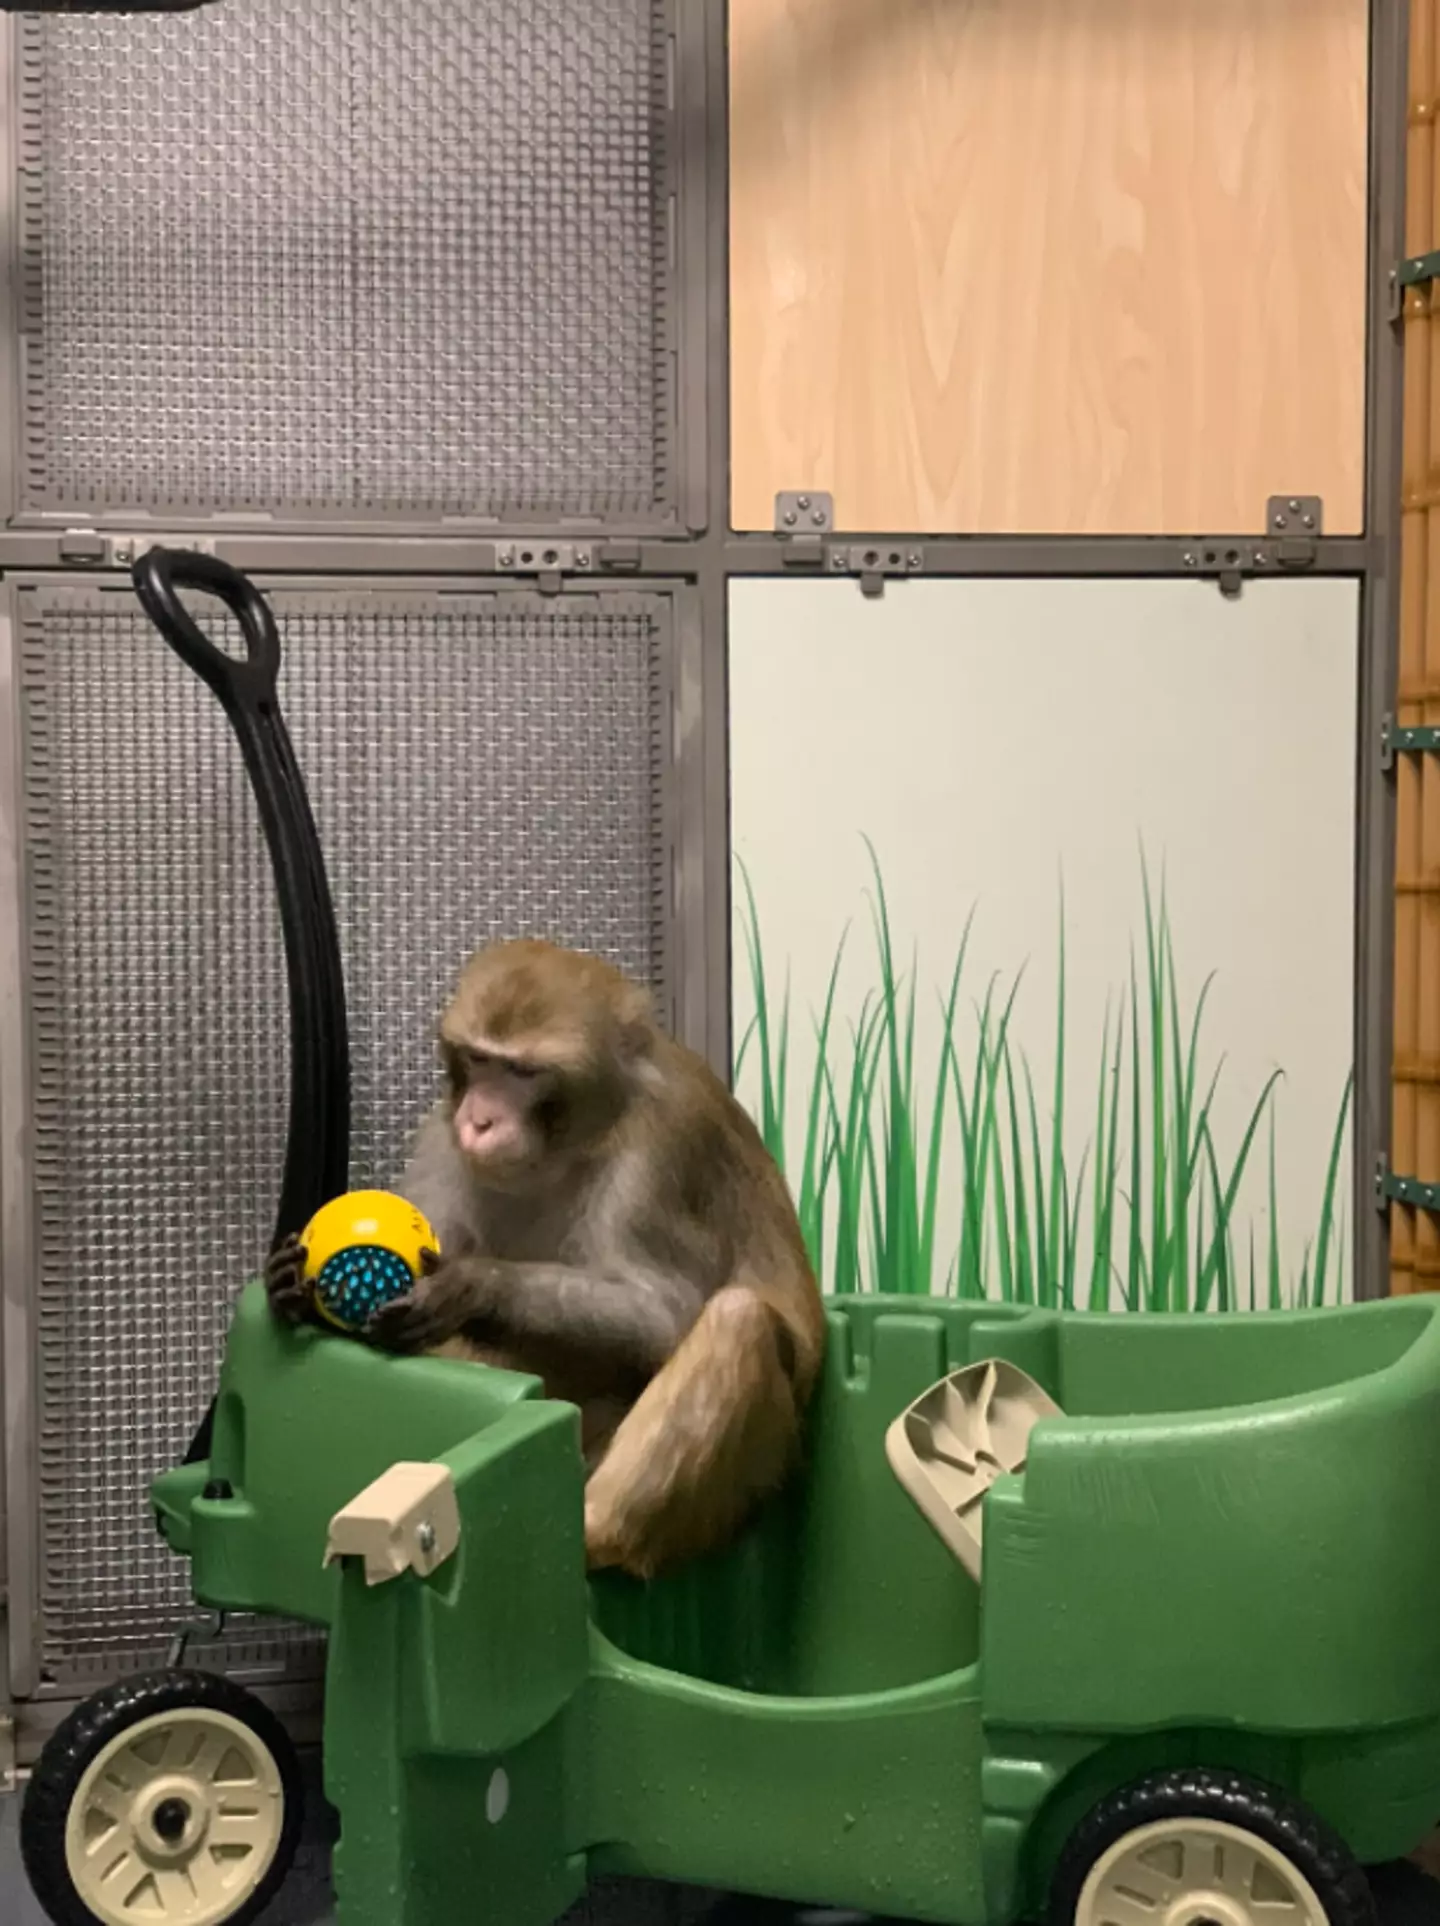 Monkey in enclosure (Neuralink)